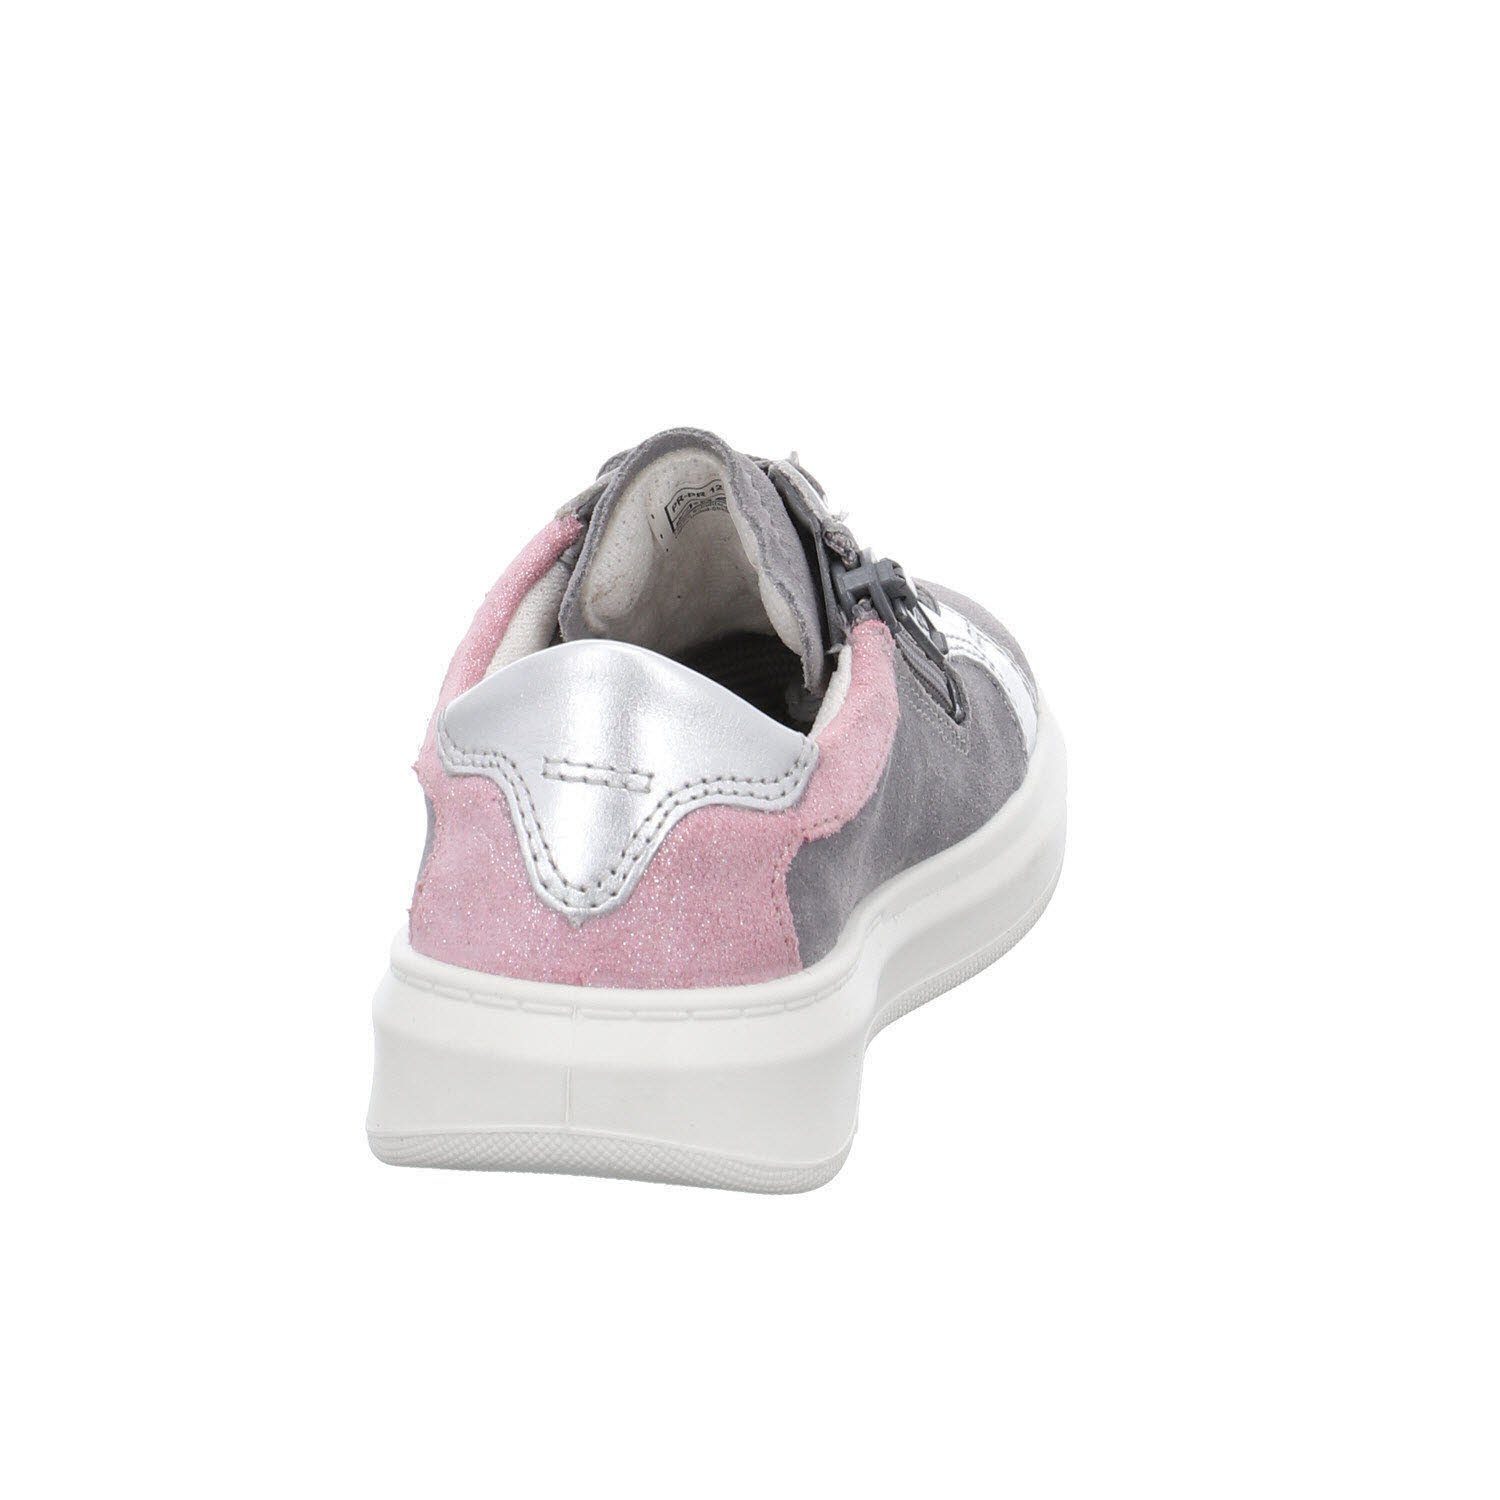 Cosmo Superfit Schnürung Schnürschuh (20401860) Kinderschuhe HELLGRAU/ROSA Schnürschuh Schuhe